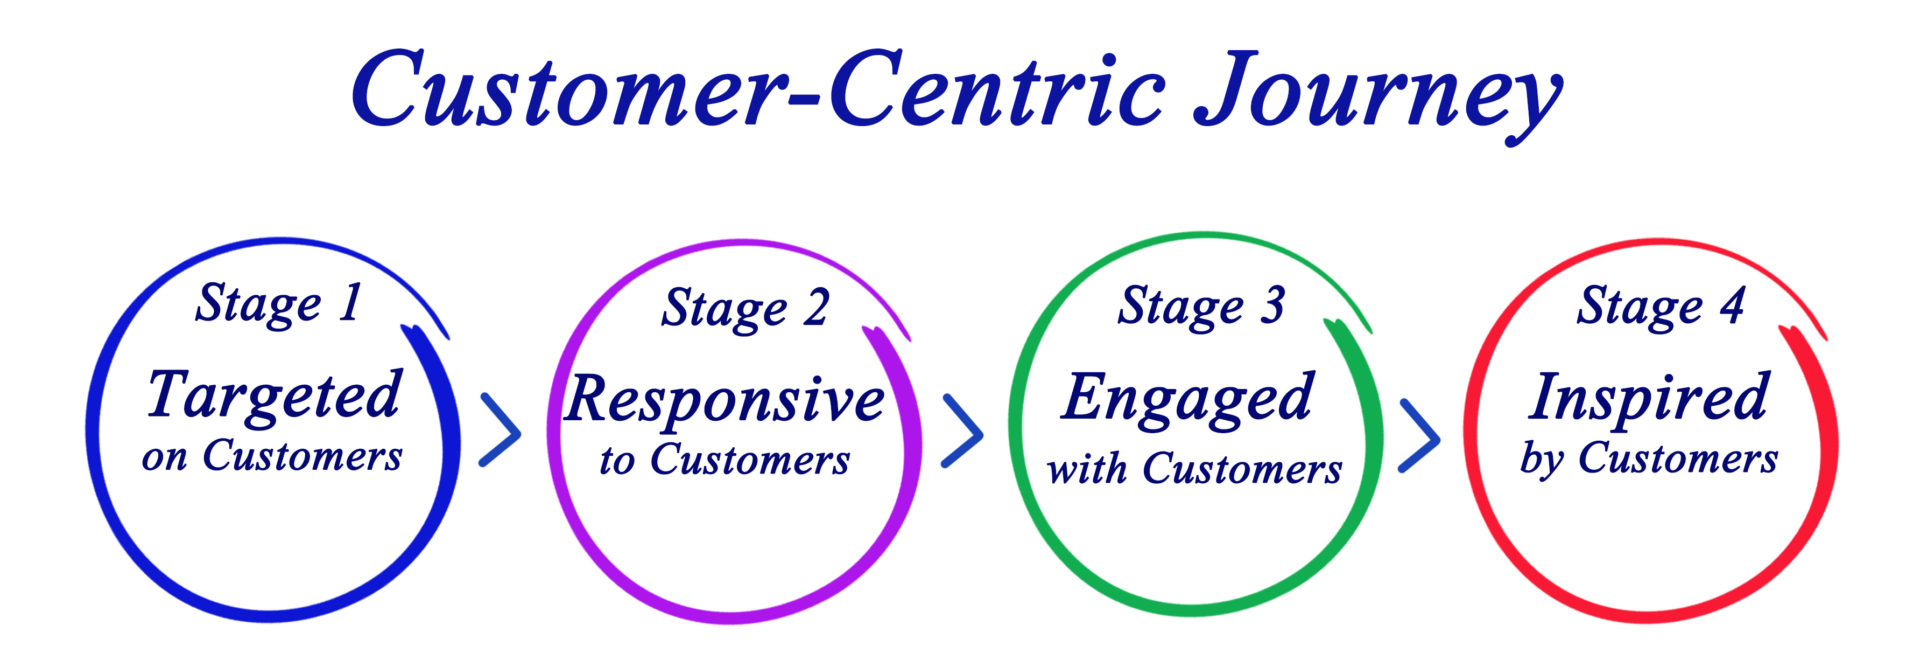 Mettre le client au centre de ses processus est l'enjeu de la culture client. Commencer par le client pour établir son organisation remet en cause profondément les processus et systèmes d'informations de l'entreprise.